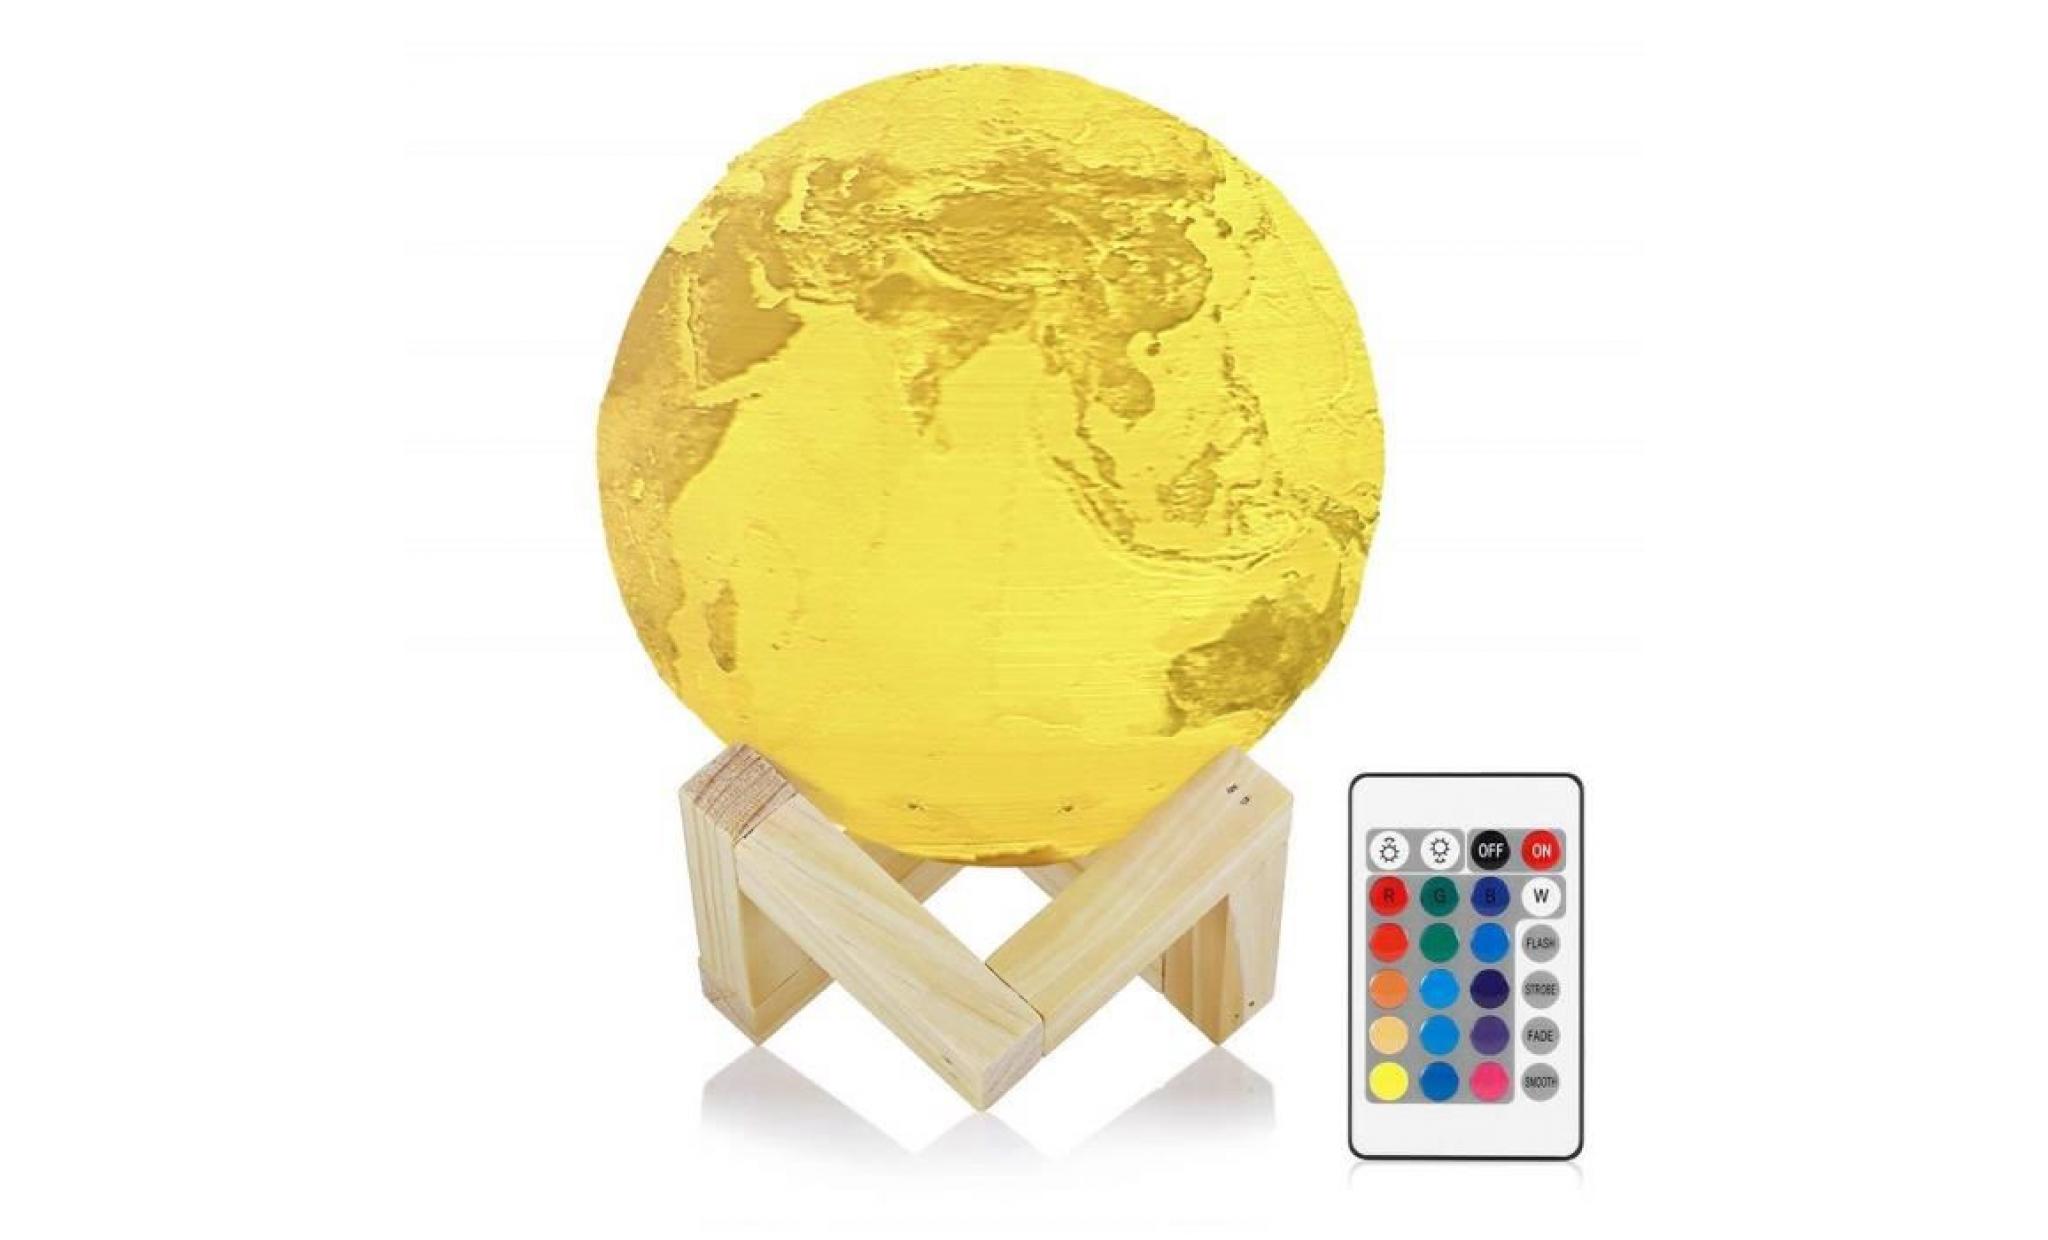 lampe 3d lampe globe terrestre inlife veilleuse rechargeable 16 couleurs,télécommande,lampe de chevet pour enfants,cadeau